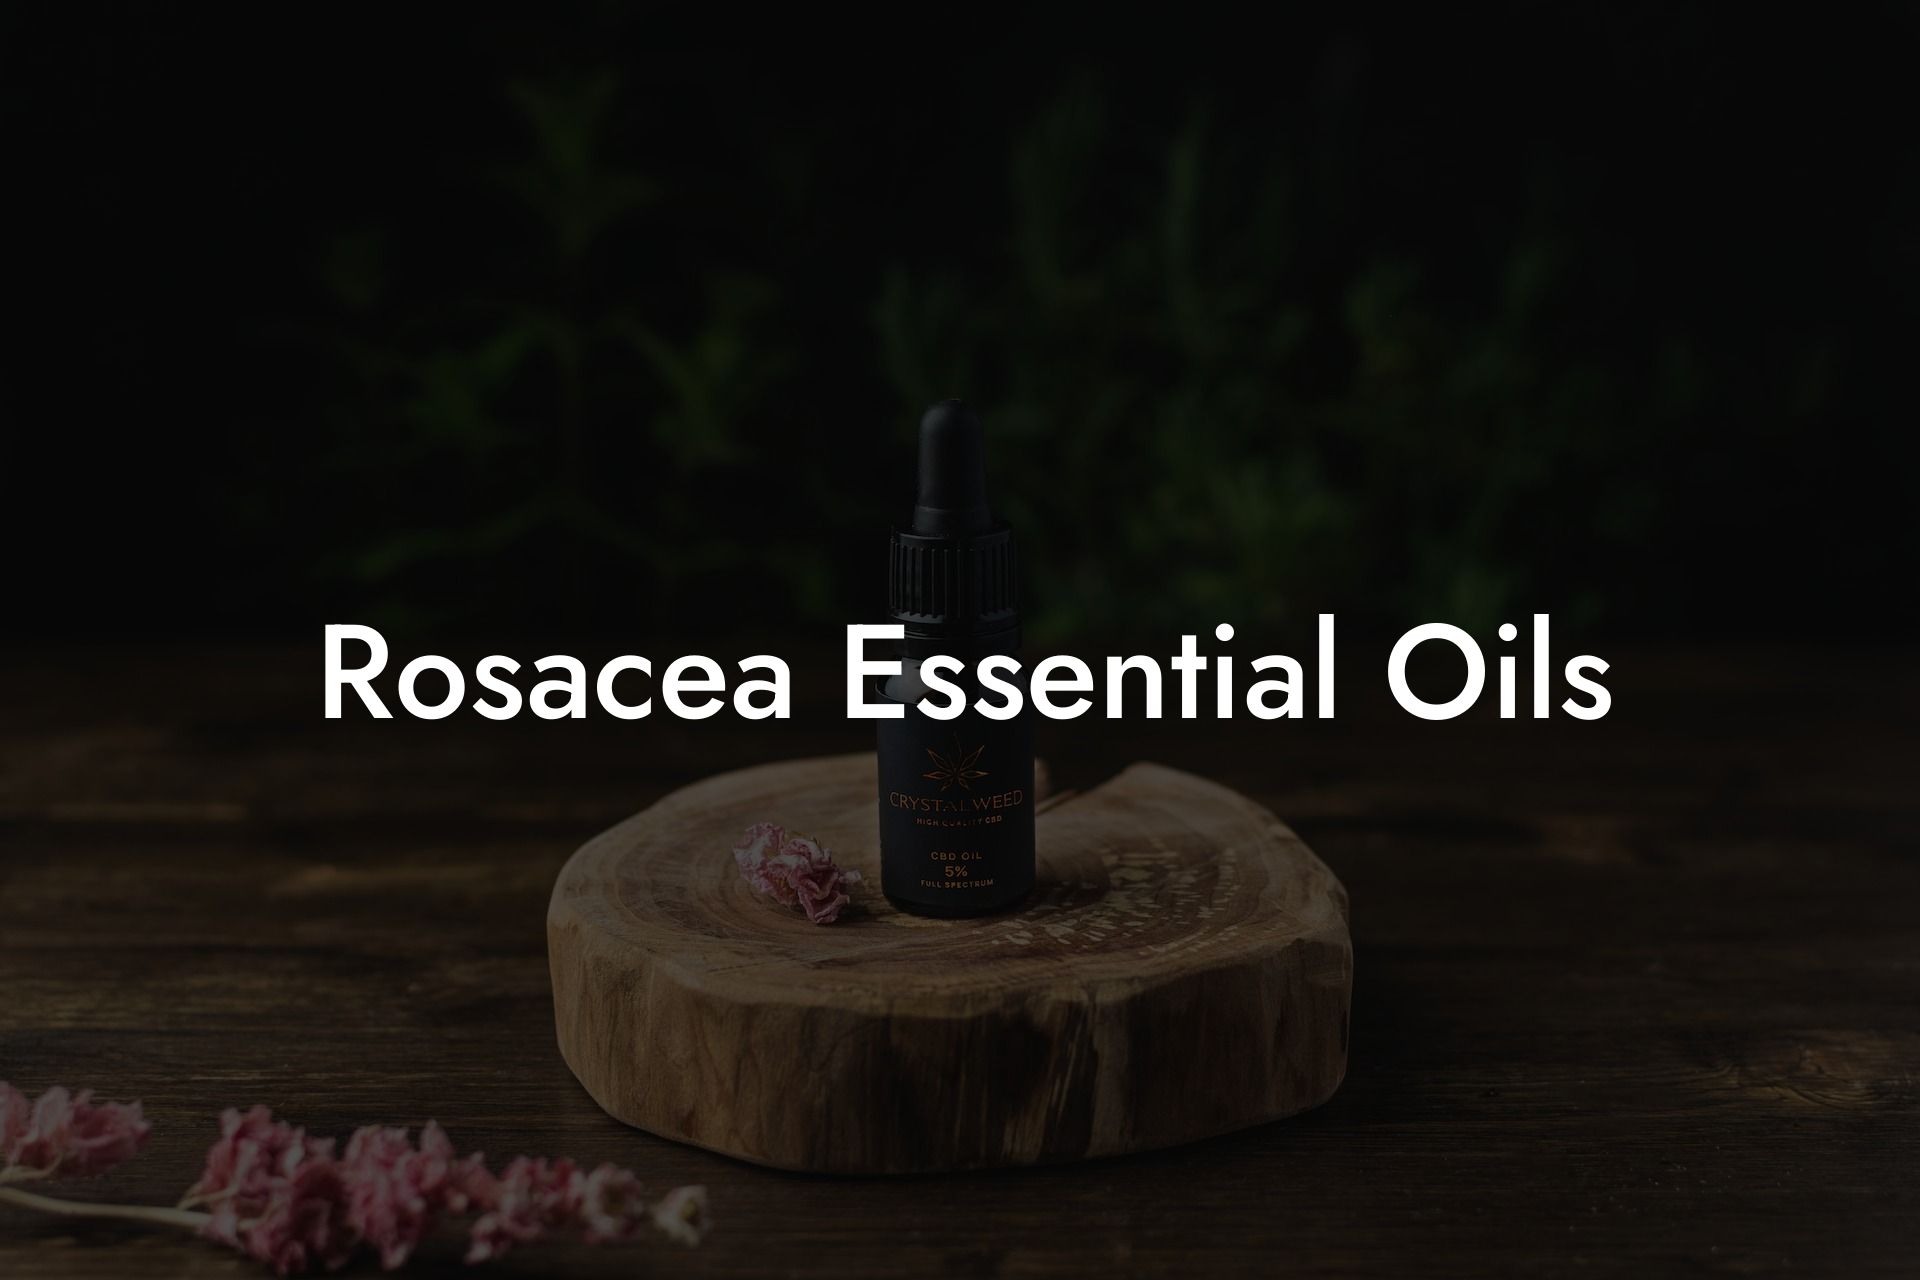 Rosacea Essential Oils